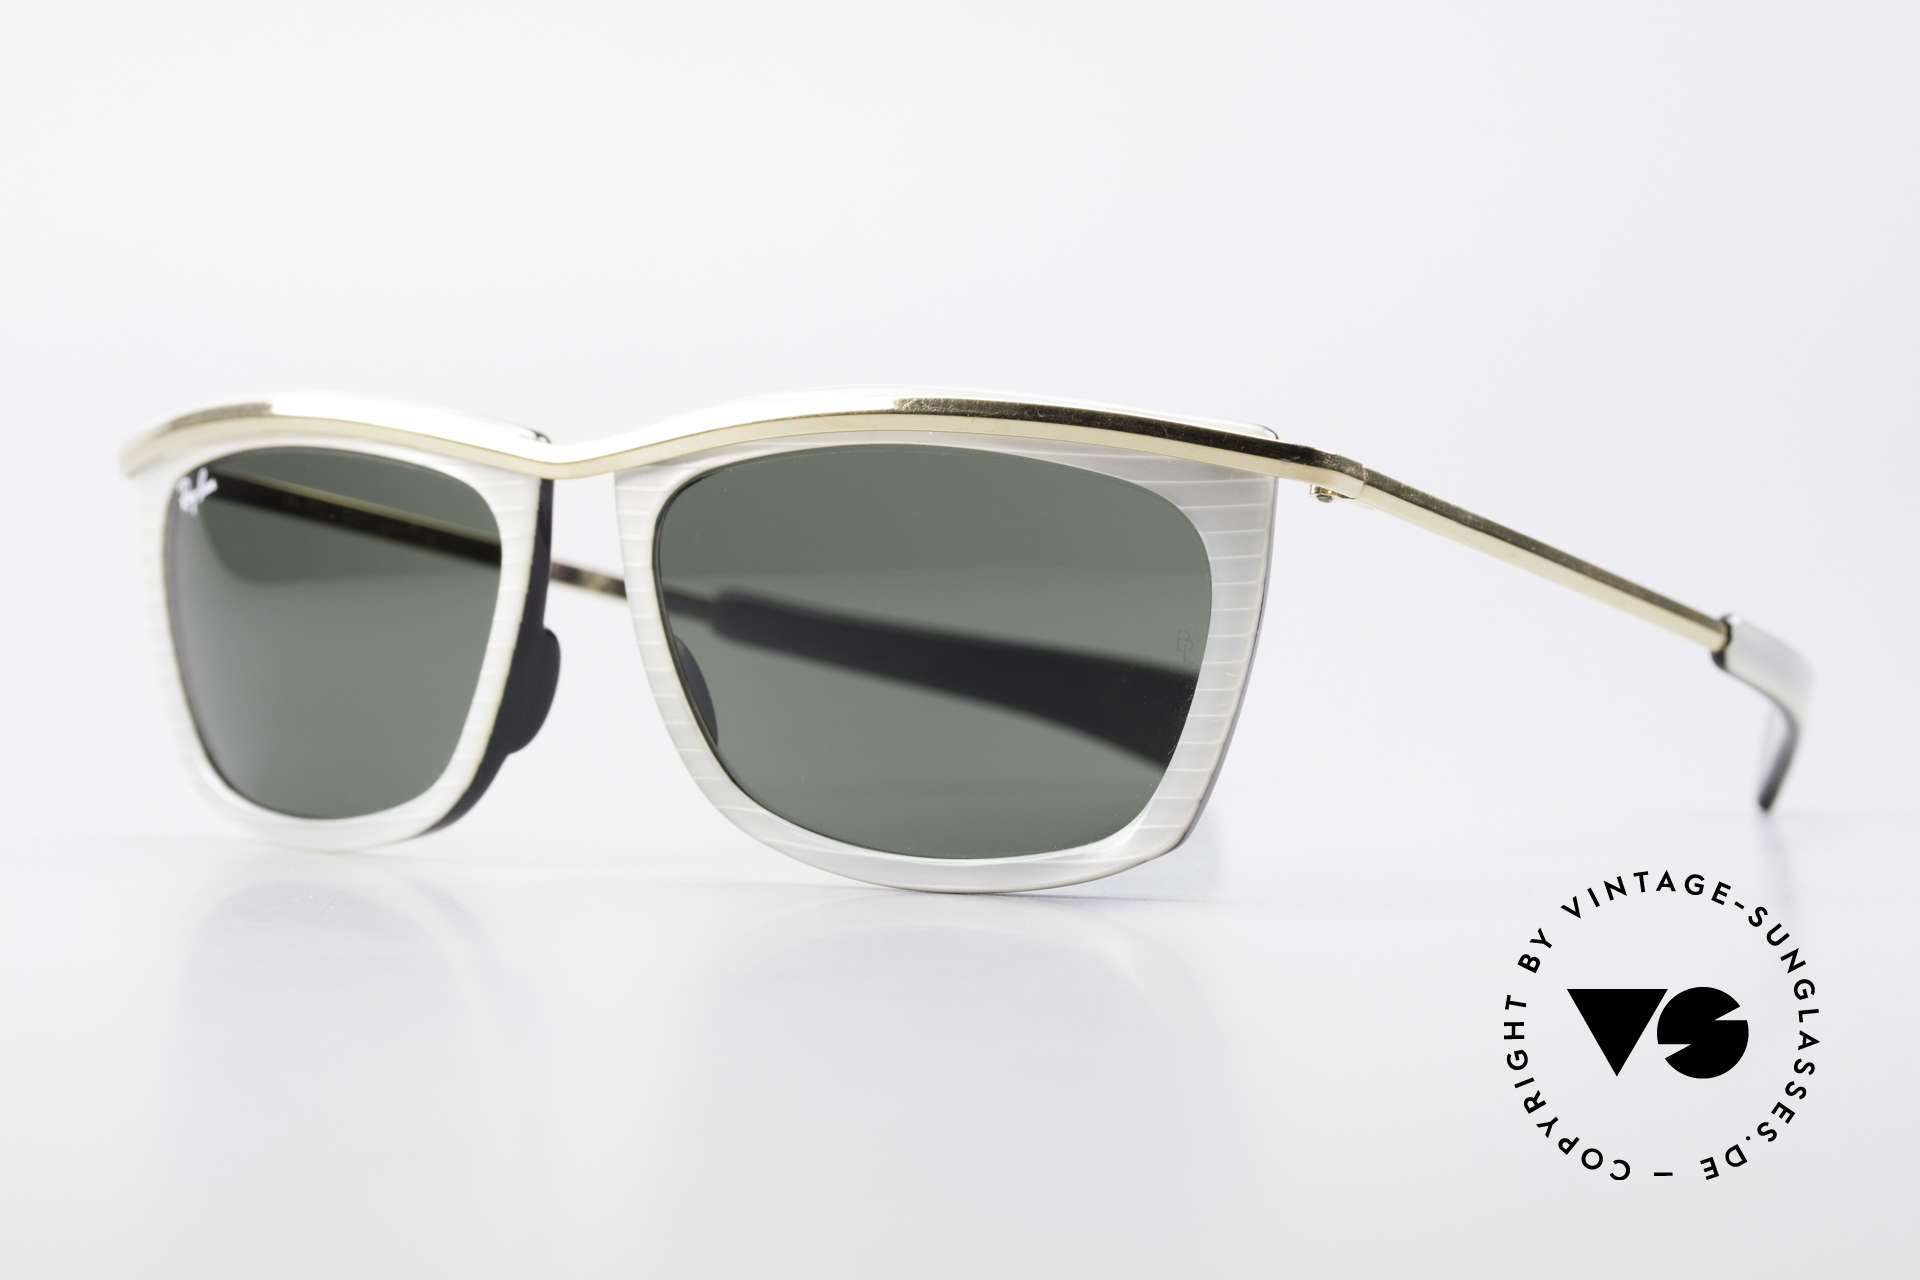 Ray Ban Olympian II B&L Ray-Ban Sonnenbrille USA, mit B&L G15 Qualitätsgläsern (100% UV Schutz), Passend für Herren und Damen